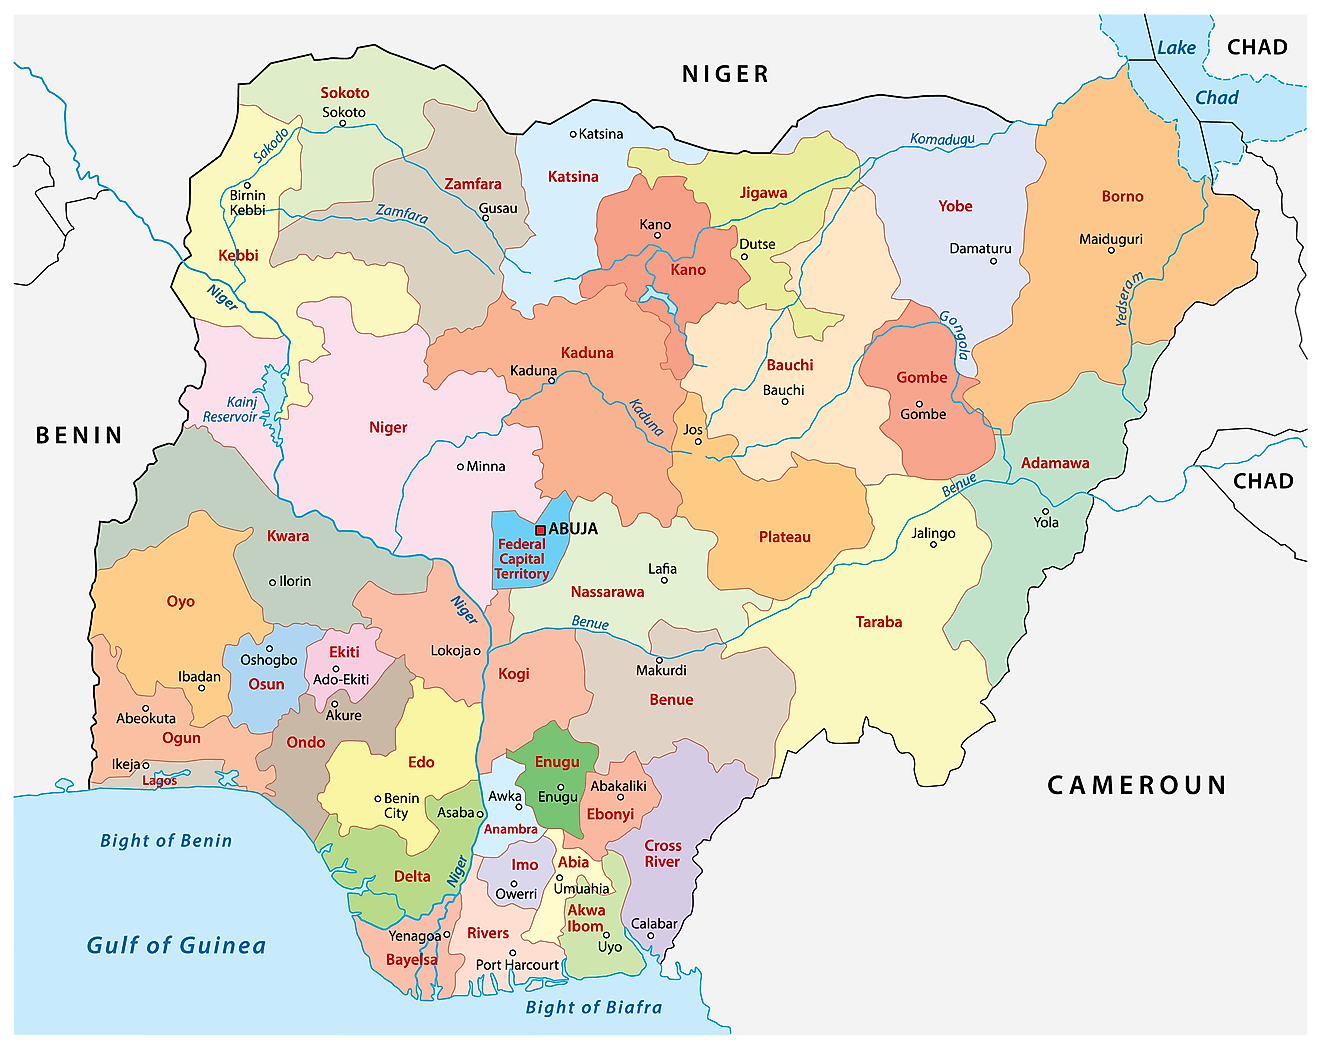 Mapa Político de Nigeria con 36 estados, sus capitales y el Territorio de la Capital Federal de Abuja.